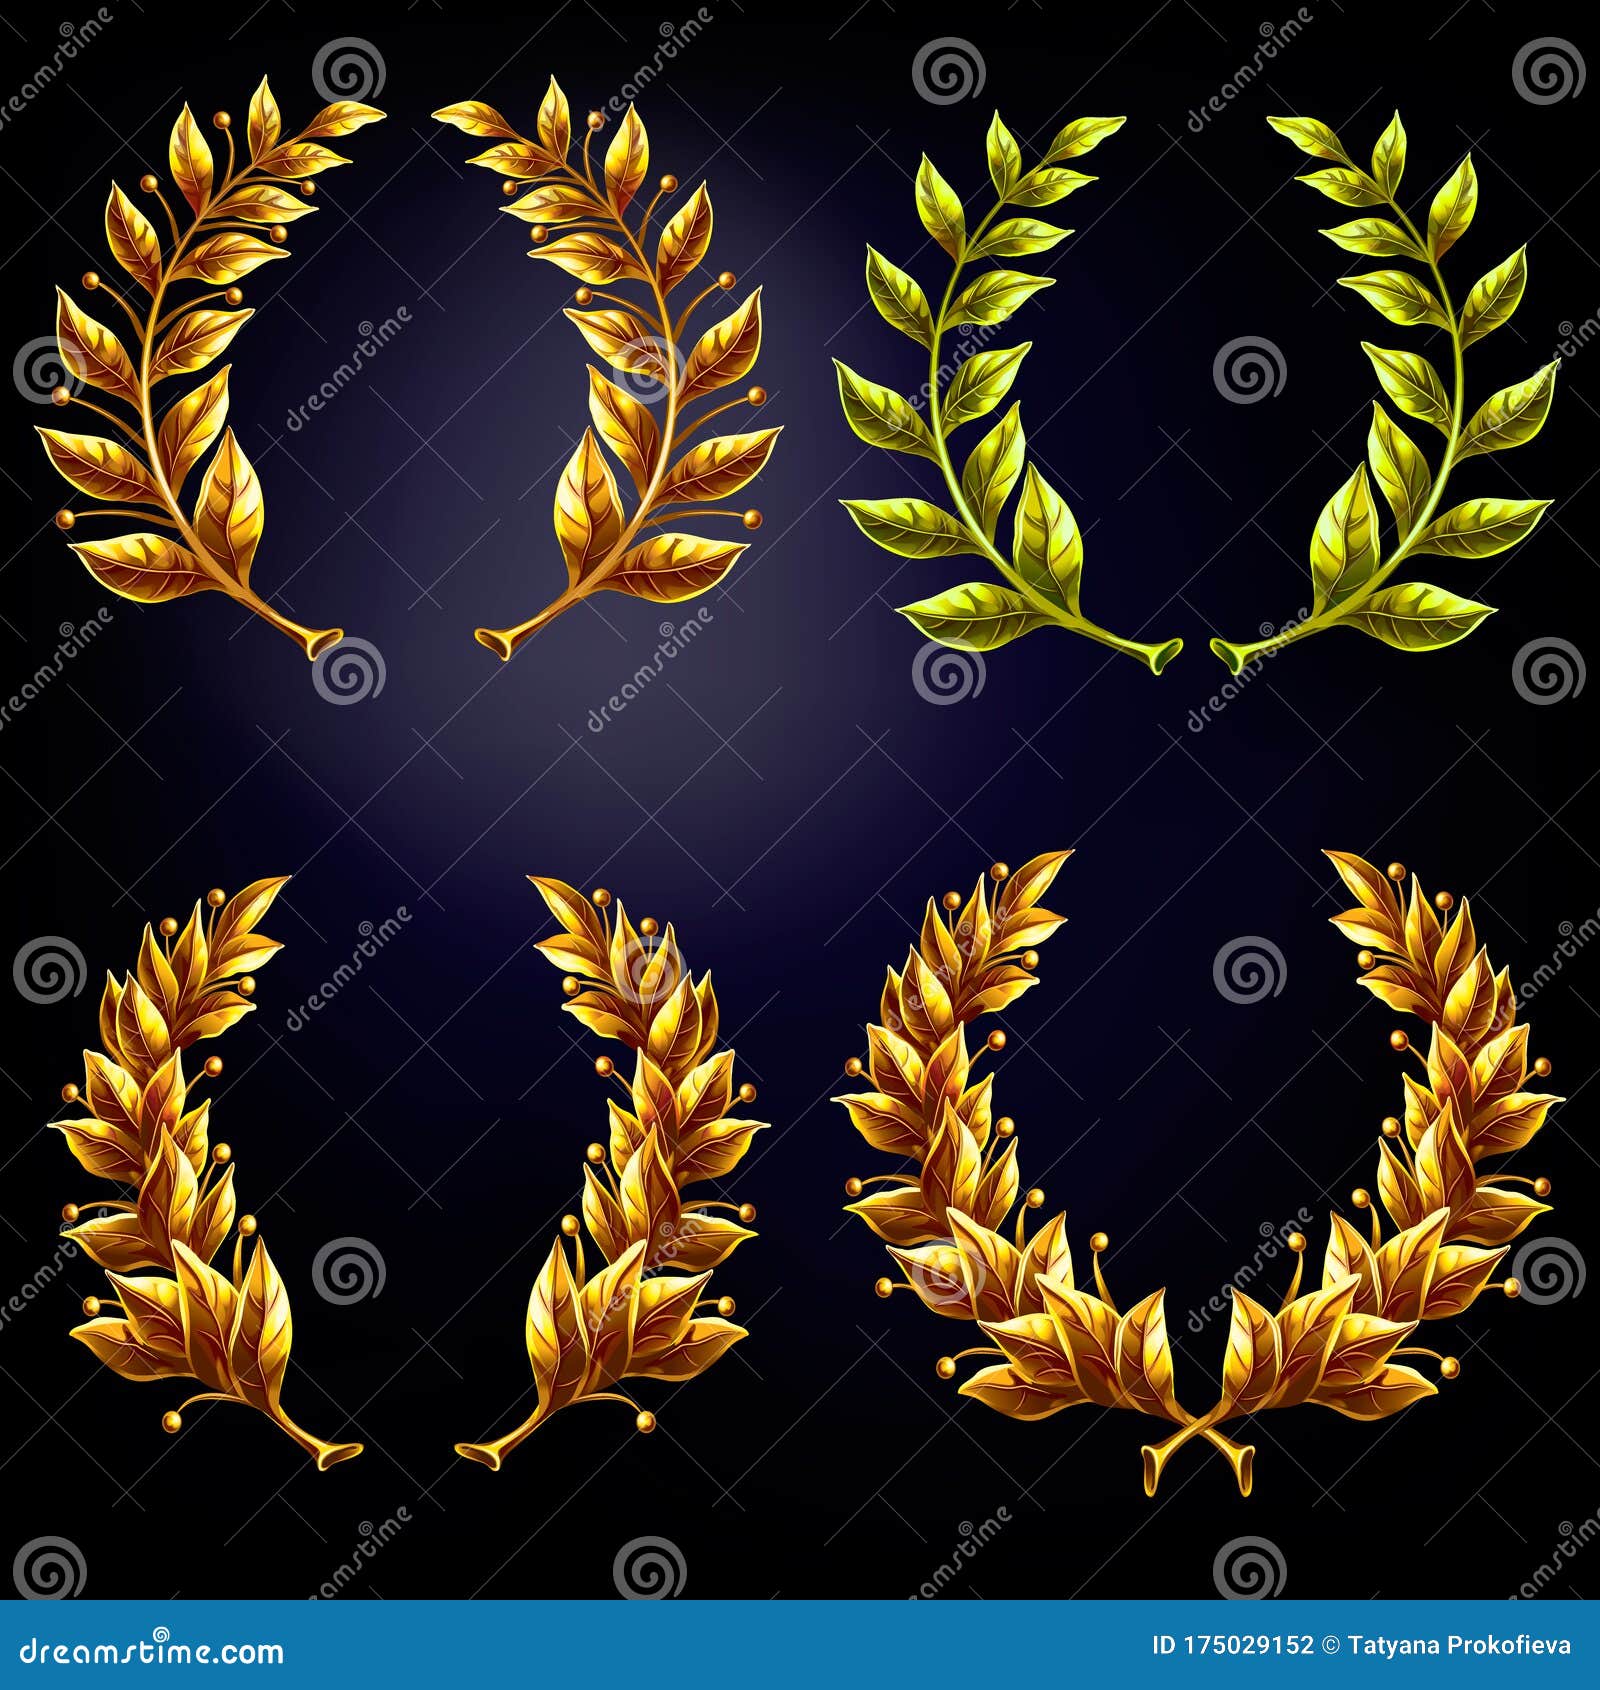 Set Of Golden Laurel Wreaths Stock Vector Illustration Of Frame